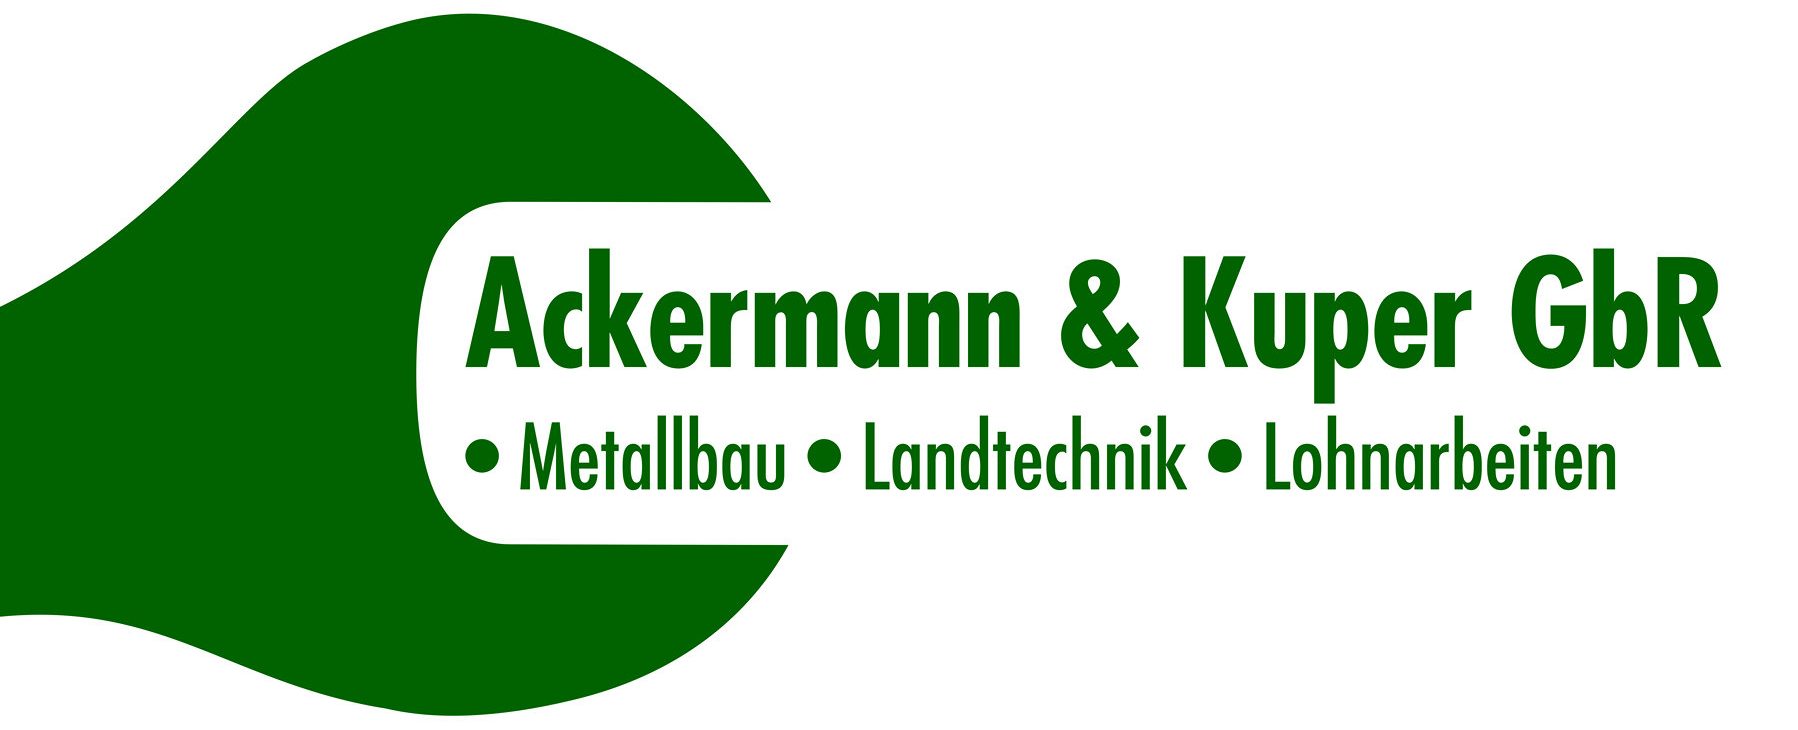 Ackermann & Kuper GbR